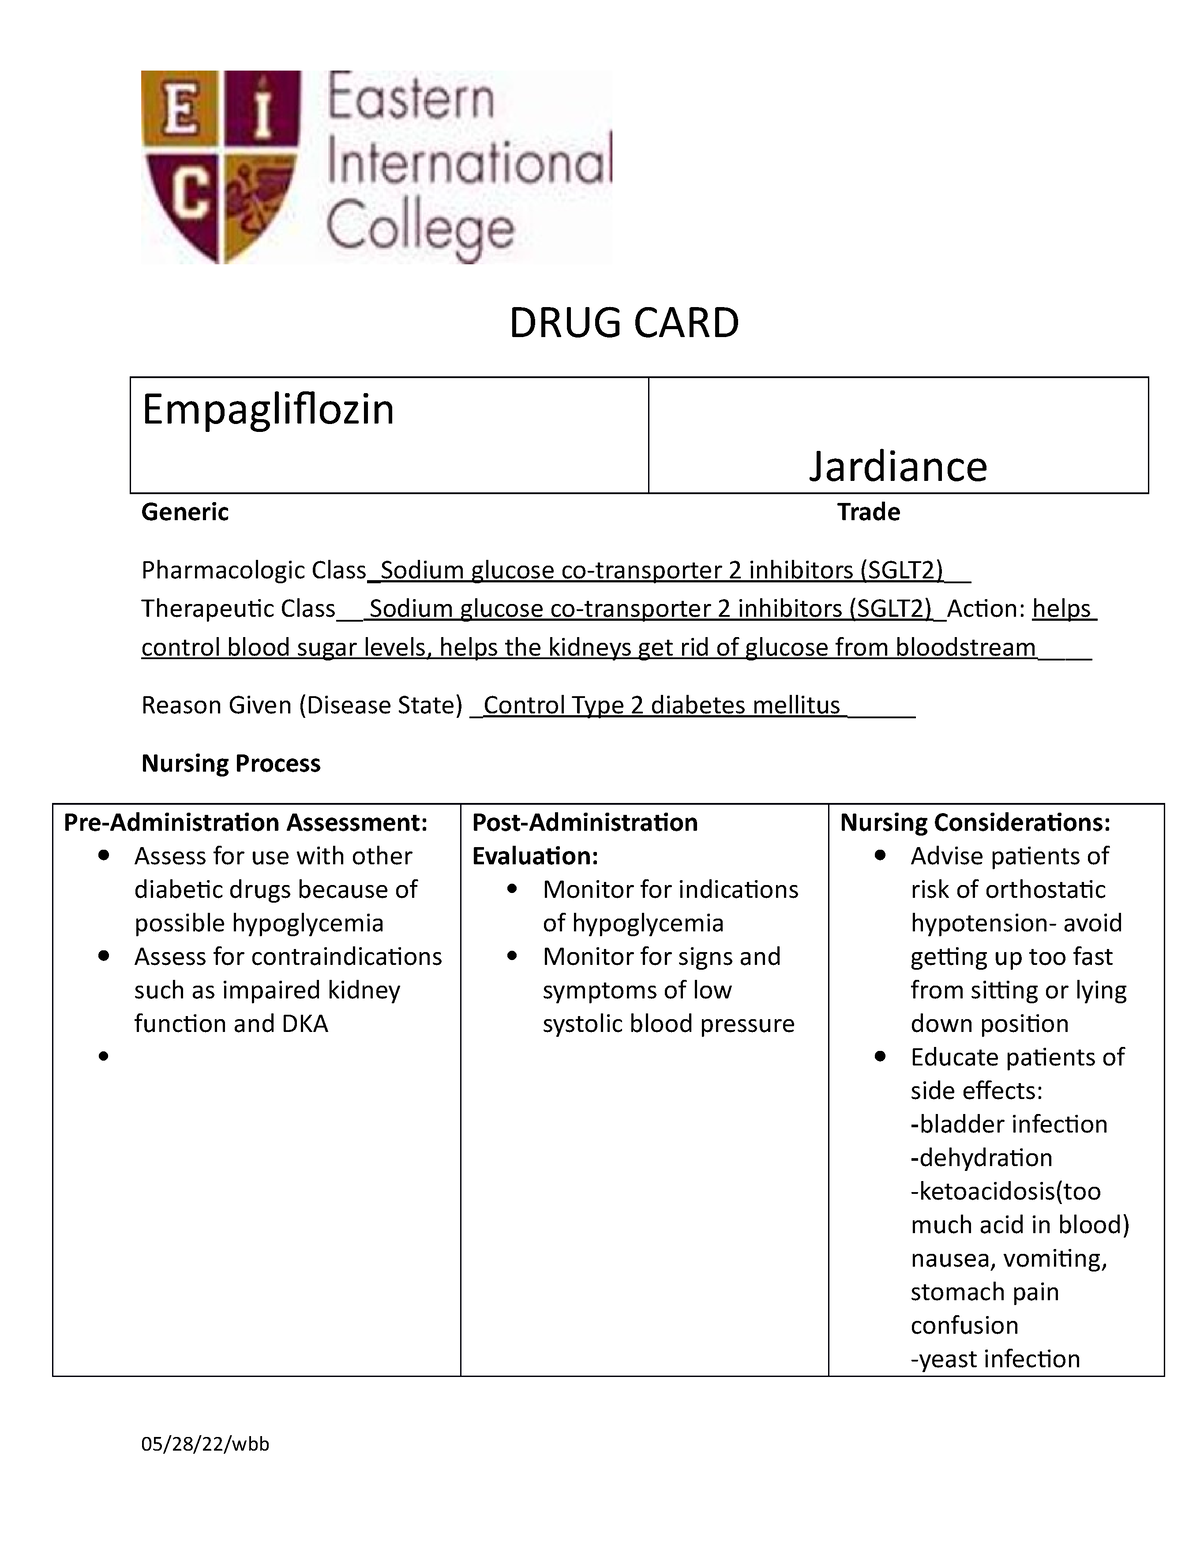 med-cards-6-drug-card-empagli-ozin-jardiance-generic-trade